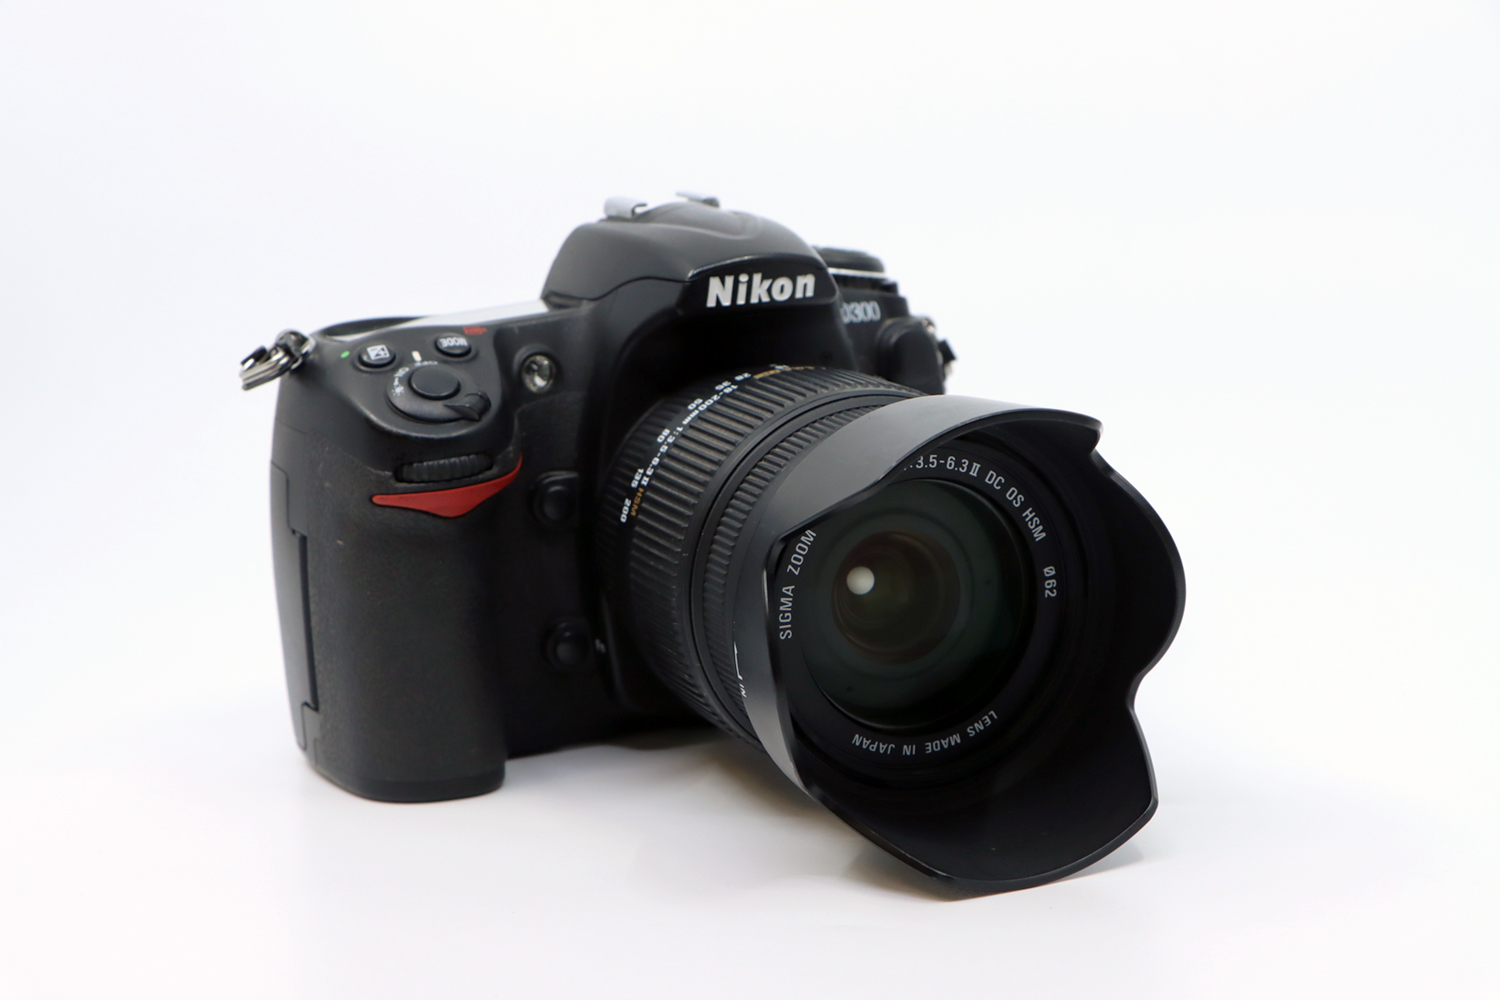 Nikon D300 + Sigma 18-200mm | IMG_6165.JPG